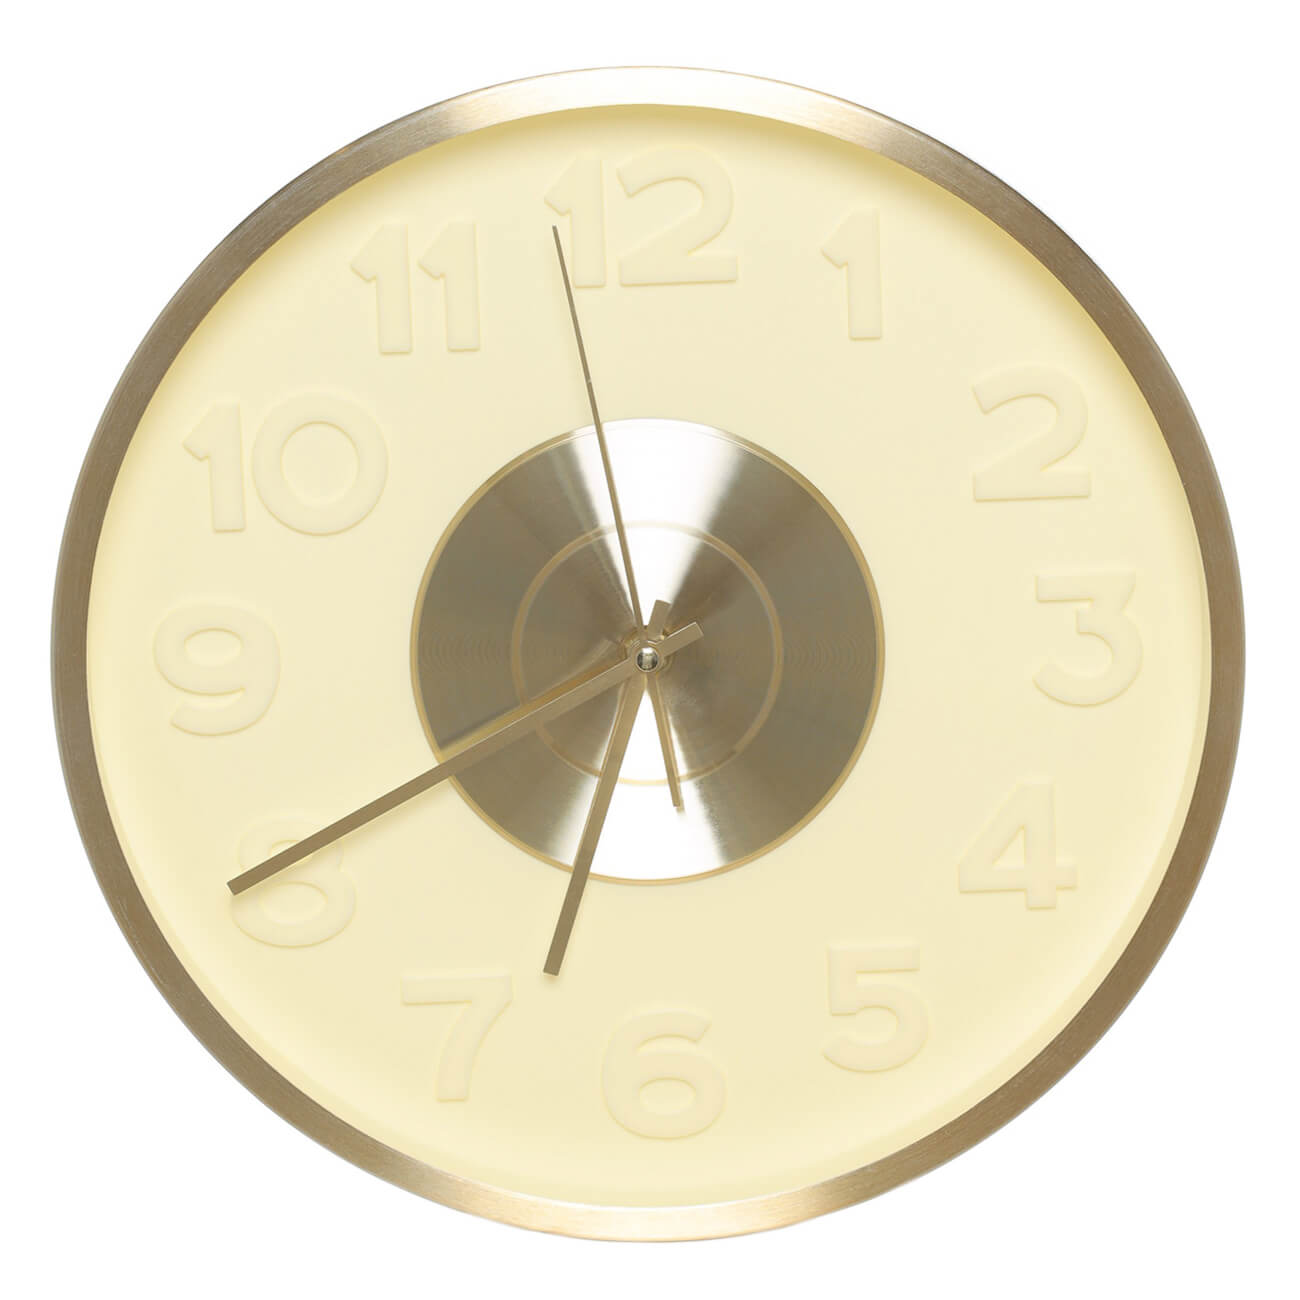 Часы настенные, 30 см, с подсветкой, пластик/стекло, круглые, золотистые, Fantastic gold часы настенные kanglijia clock серые 40х40х4 7 см